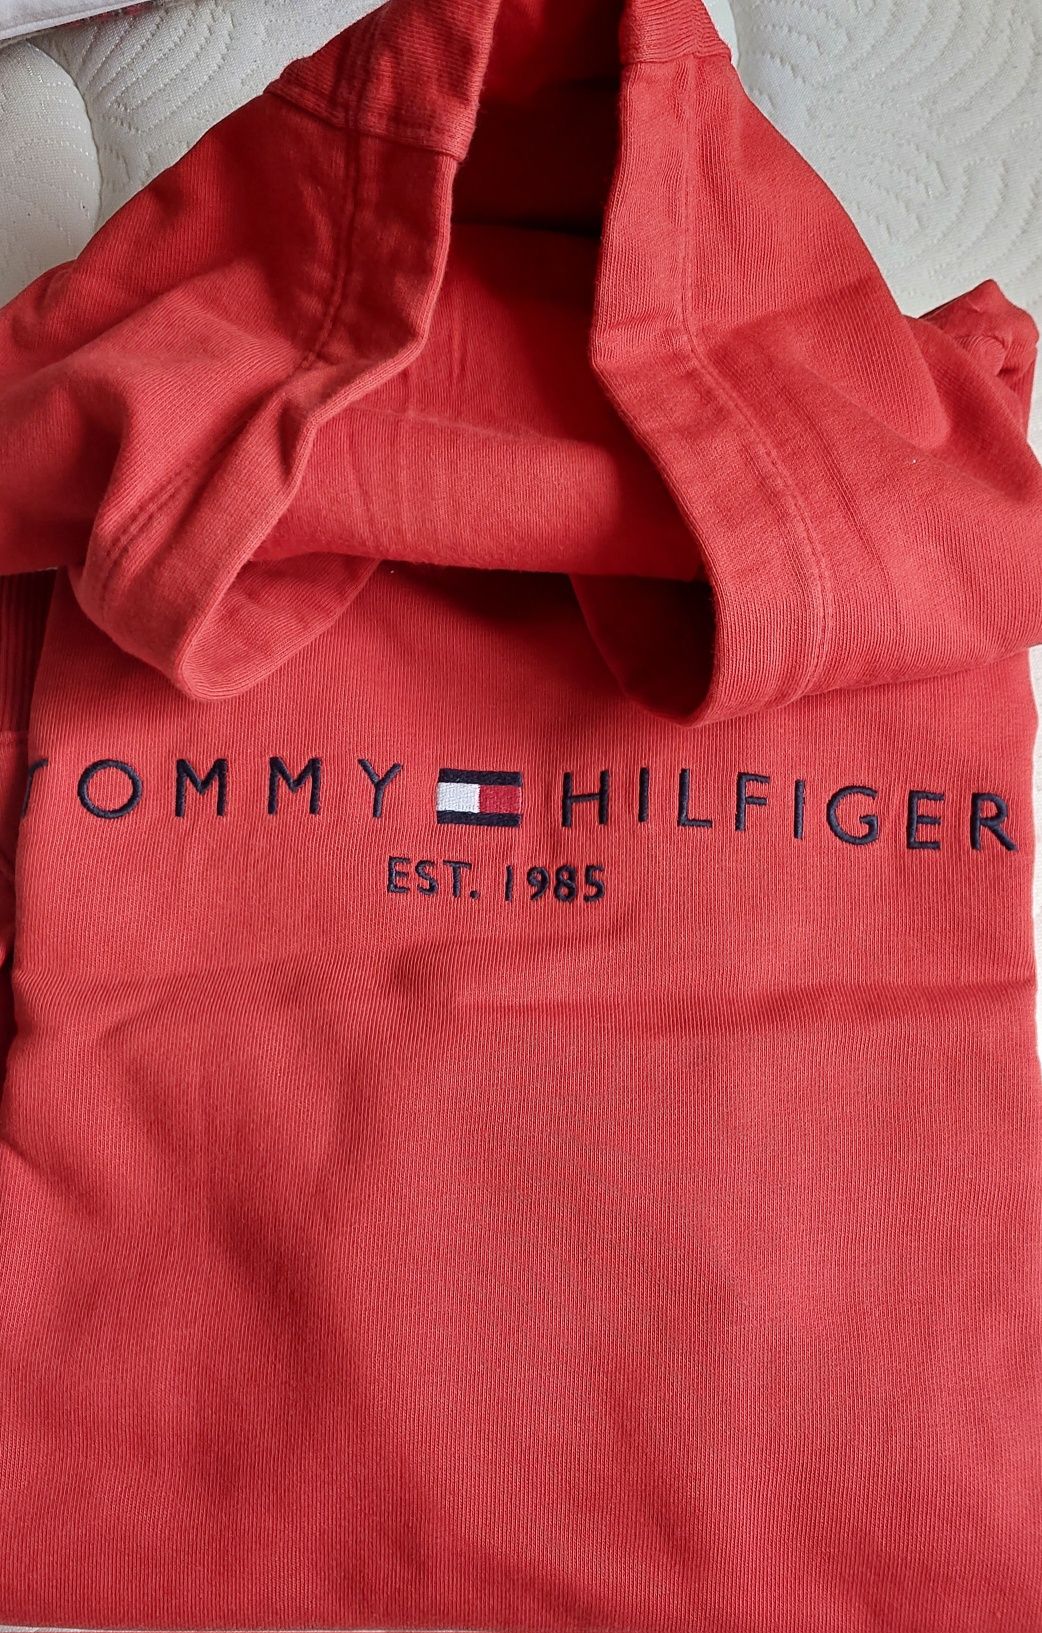 3 Sweater-shirts Tommy Hilfiger e polo Ralph lauren